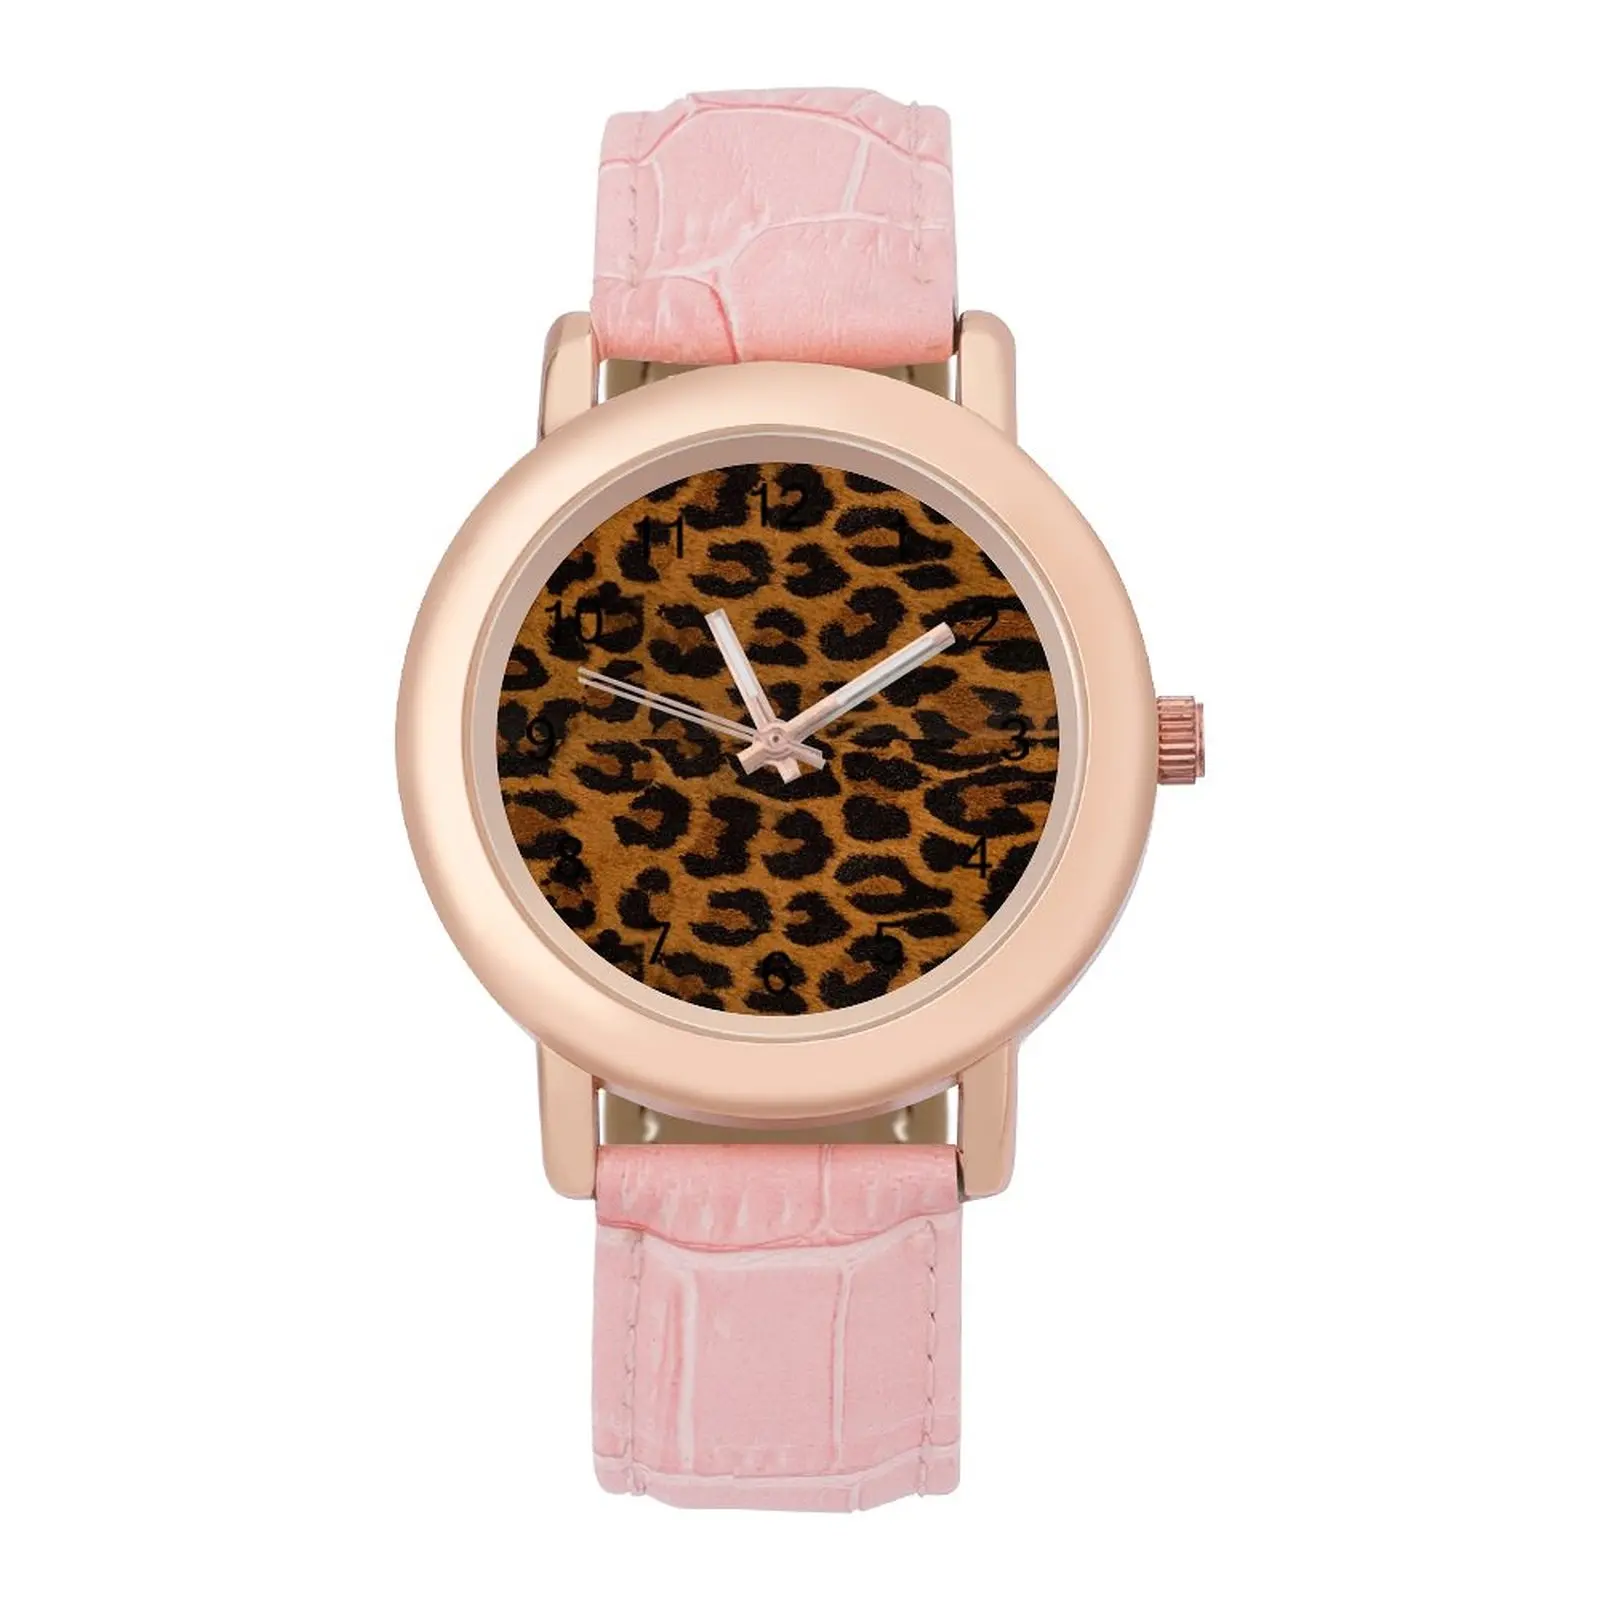 Leopard Quartz Watch Animal Skin Print Casual Female Wrist Watch Steel Gym Good Quality Wristwatch